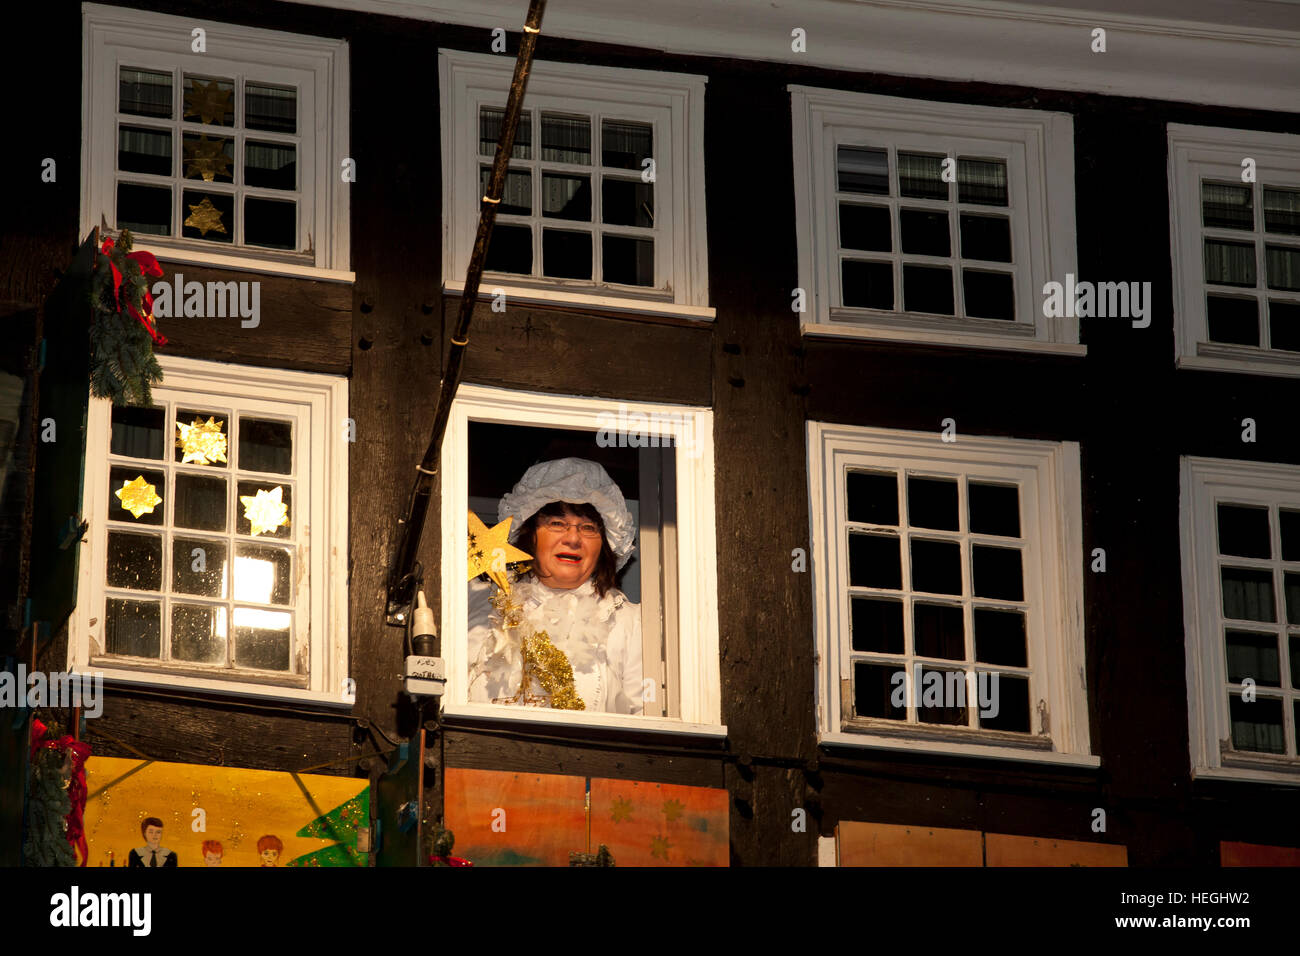 Deutschland, Hattingen, vom 1 Dezember 24 Fenster des alten Rathauses sind als einen riesigen Adventskalender Mutter Hulda eingerichtet Stockfoto